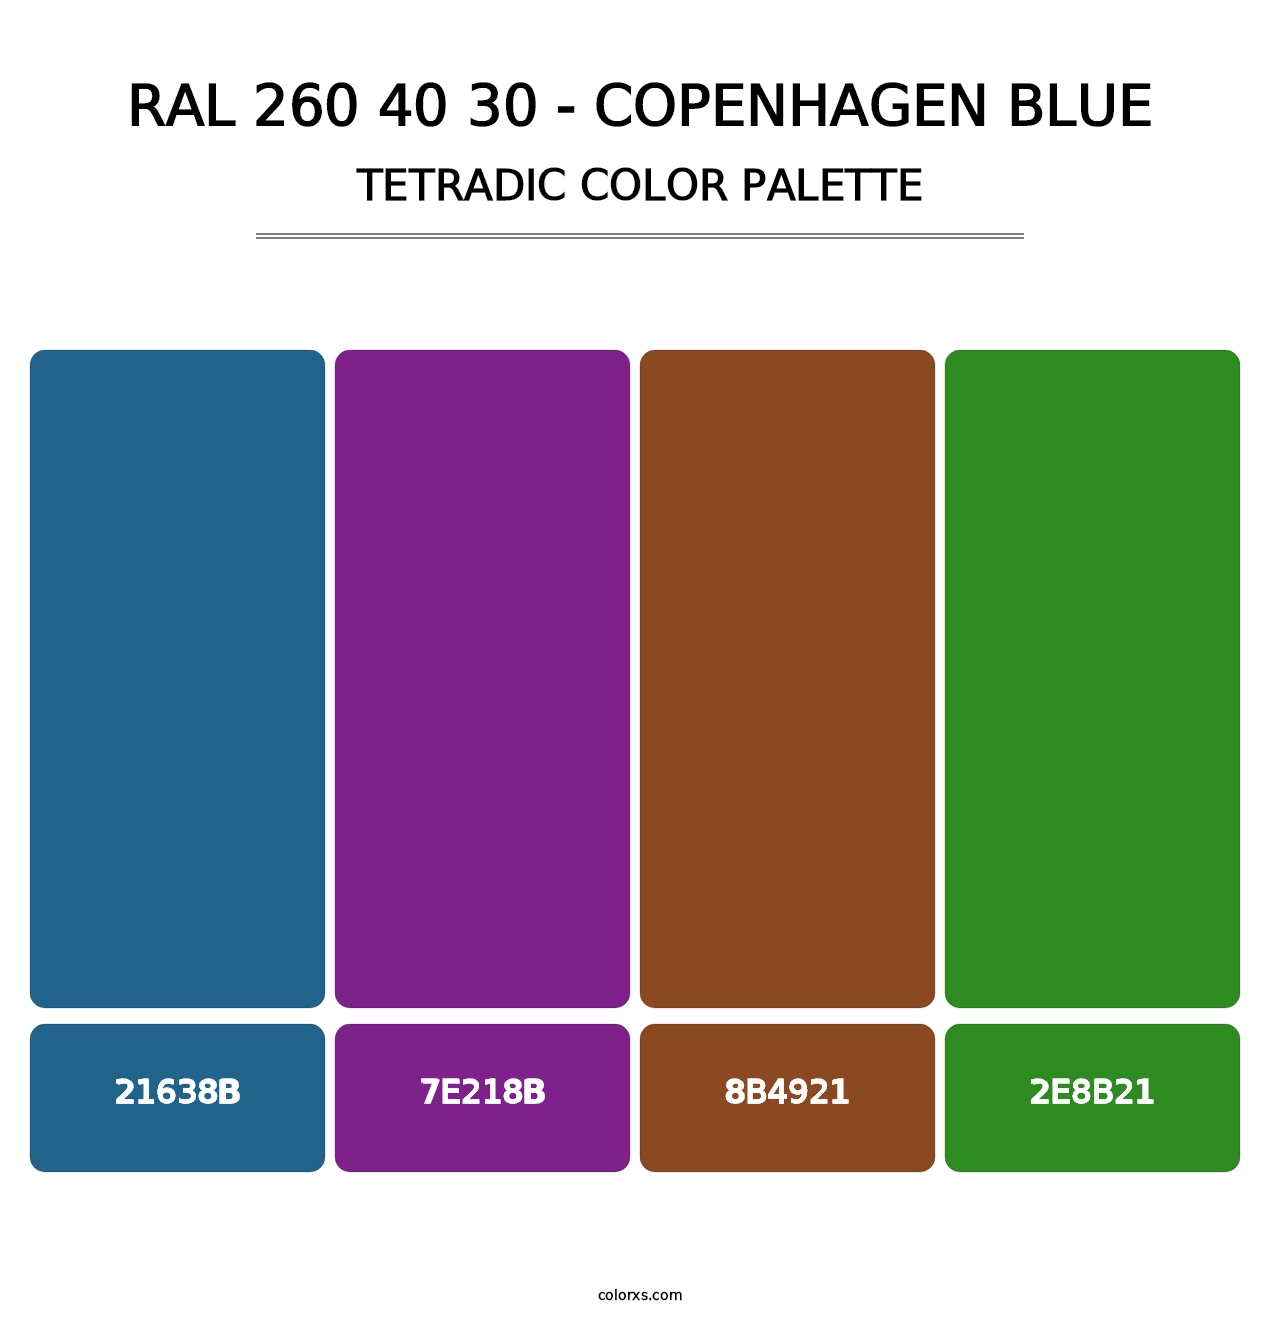 RAL 260 40 30 - Copenhagen Blue - Tetradic Color Palette